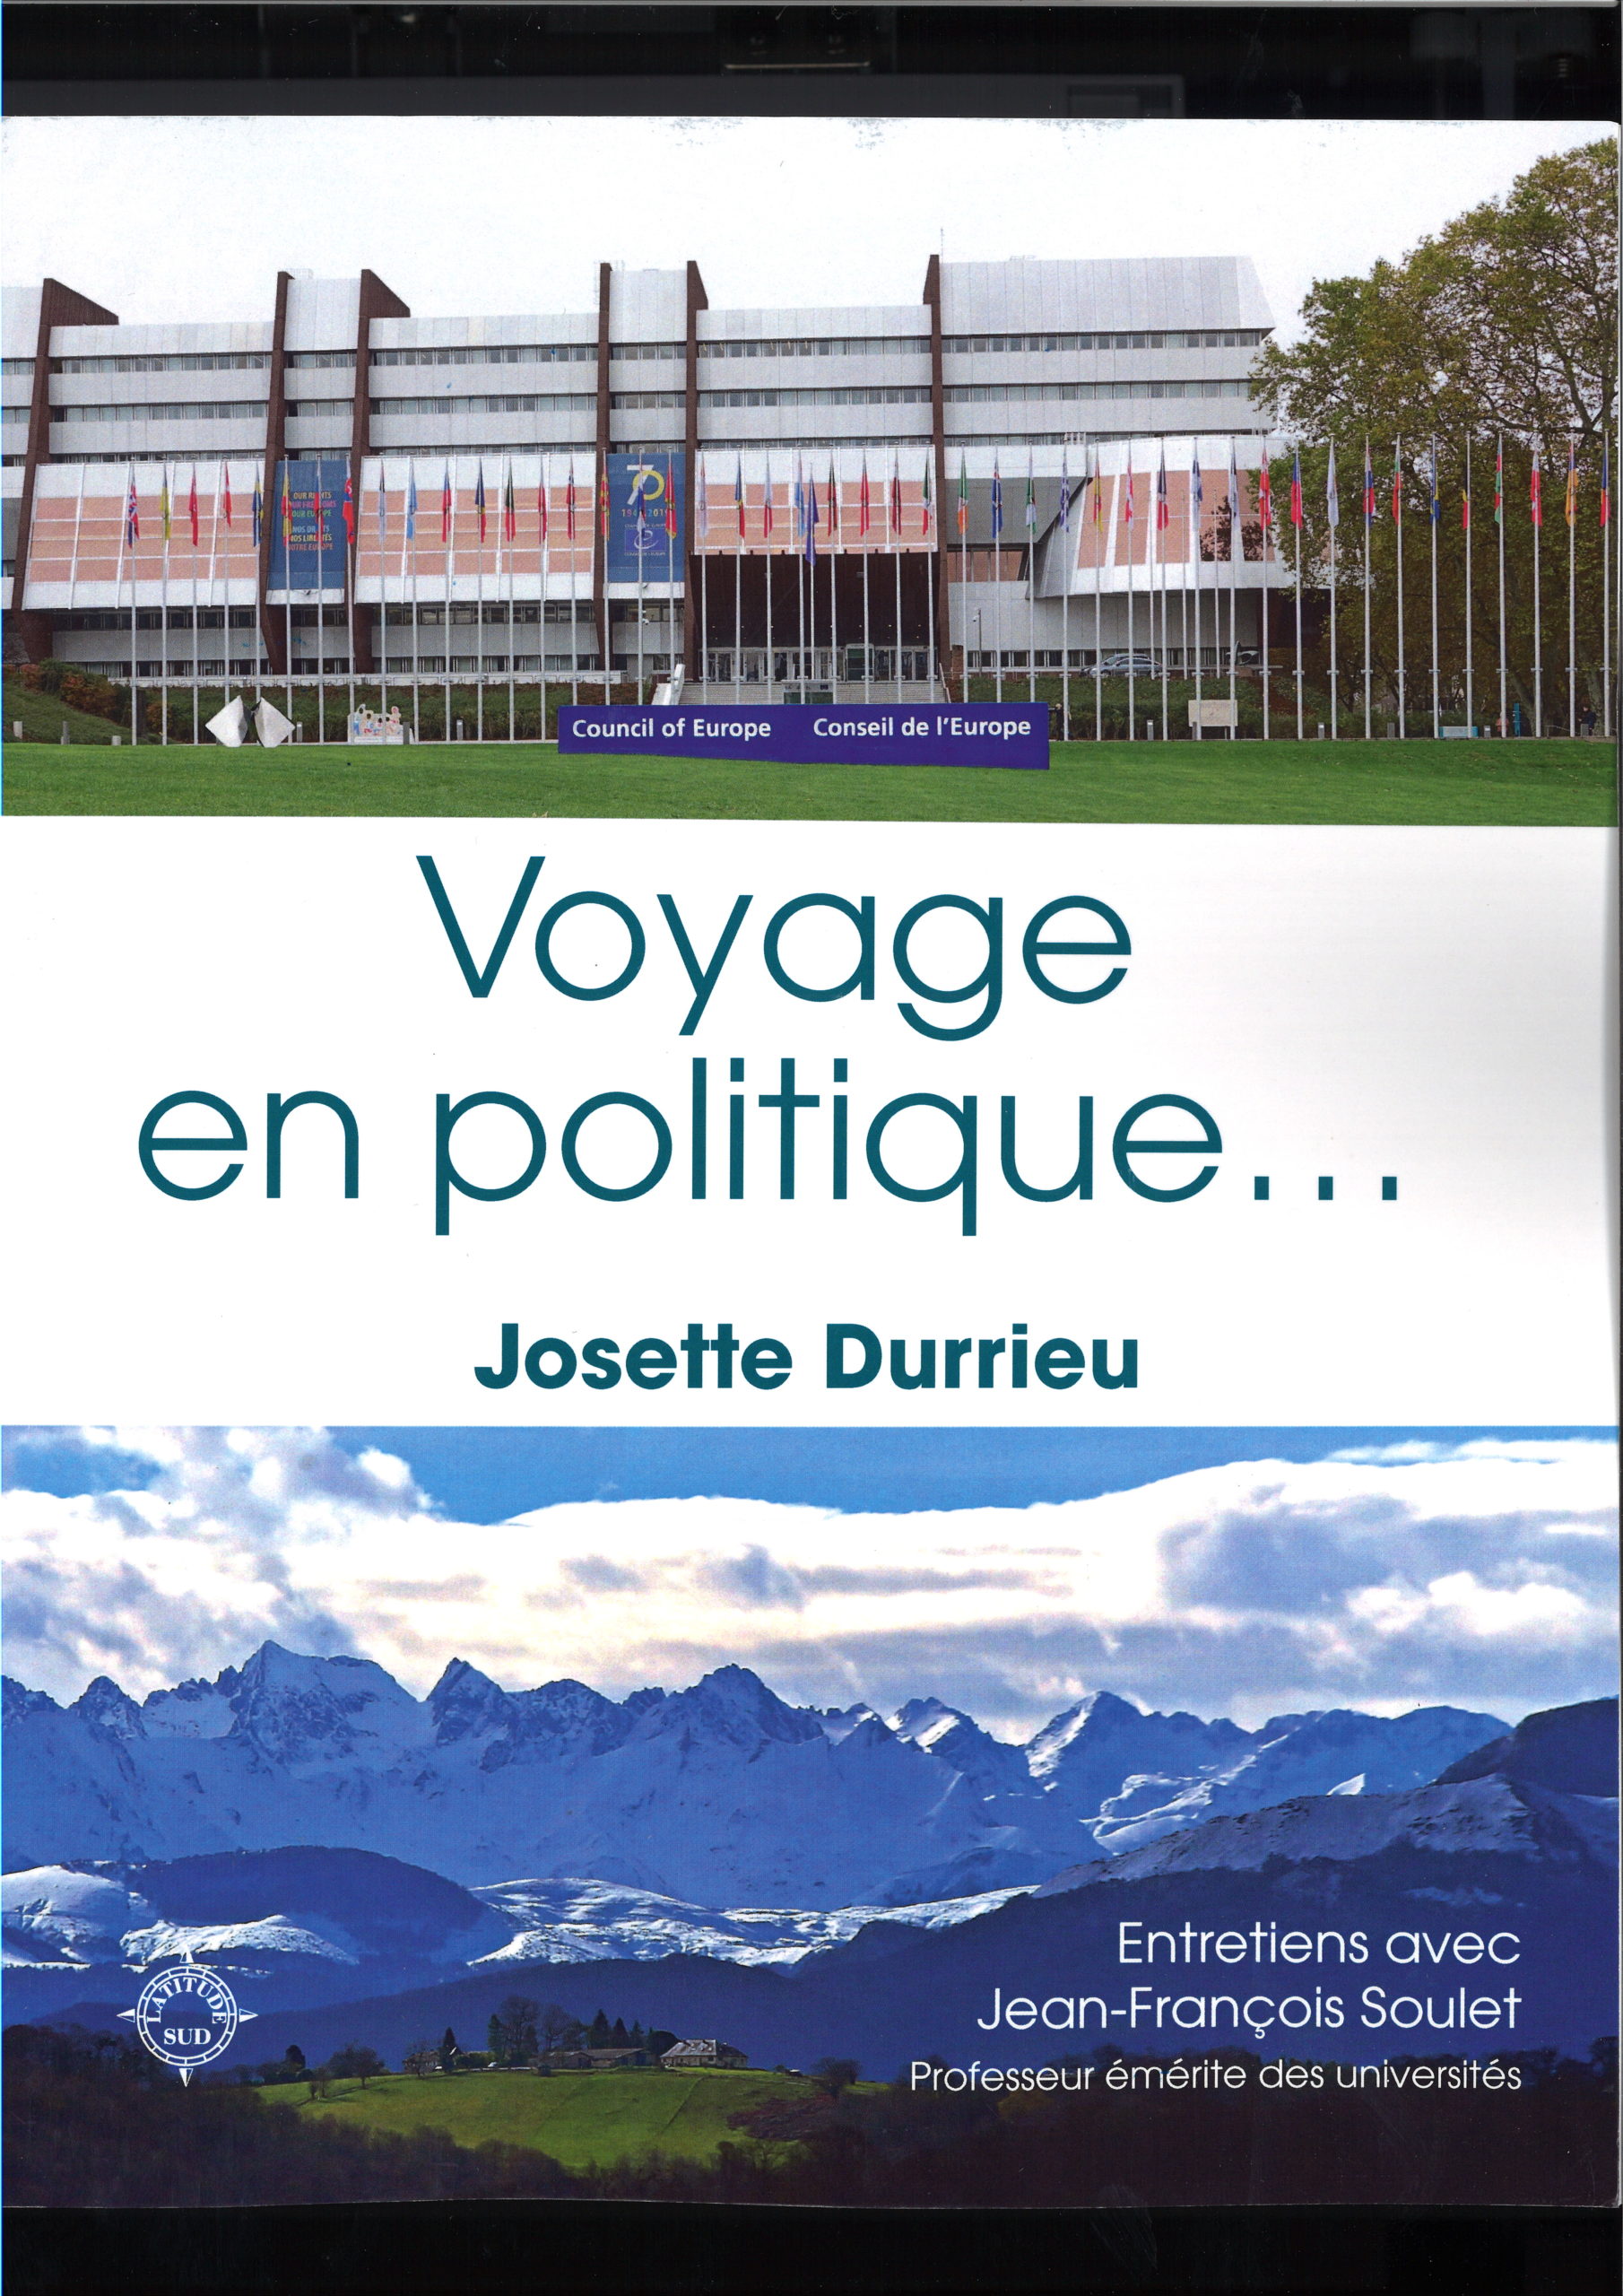 Lancement du livre « Voyage en politique ». EUROPE – Conseil de l’Europe. Missions de 1992 à 2017. Points développés : Moldavie, Turquie, Russie, Conflits gelés, Moyen-Orient, Maghreb